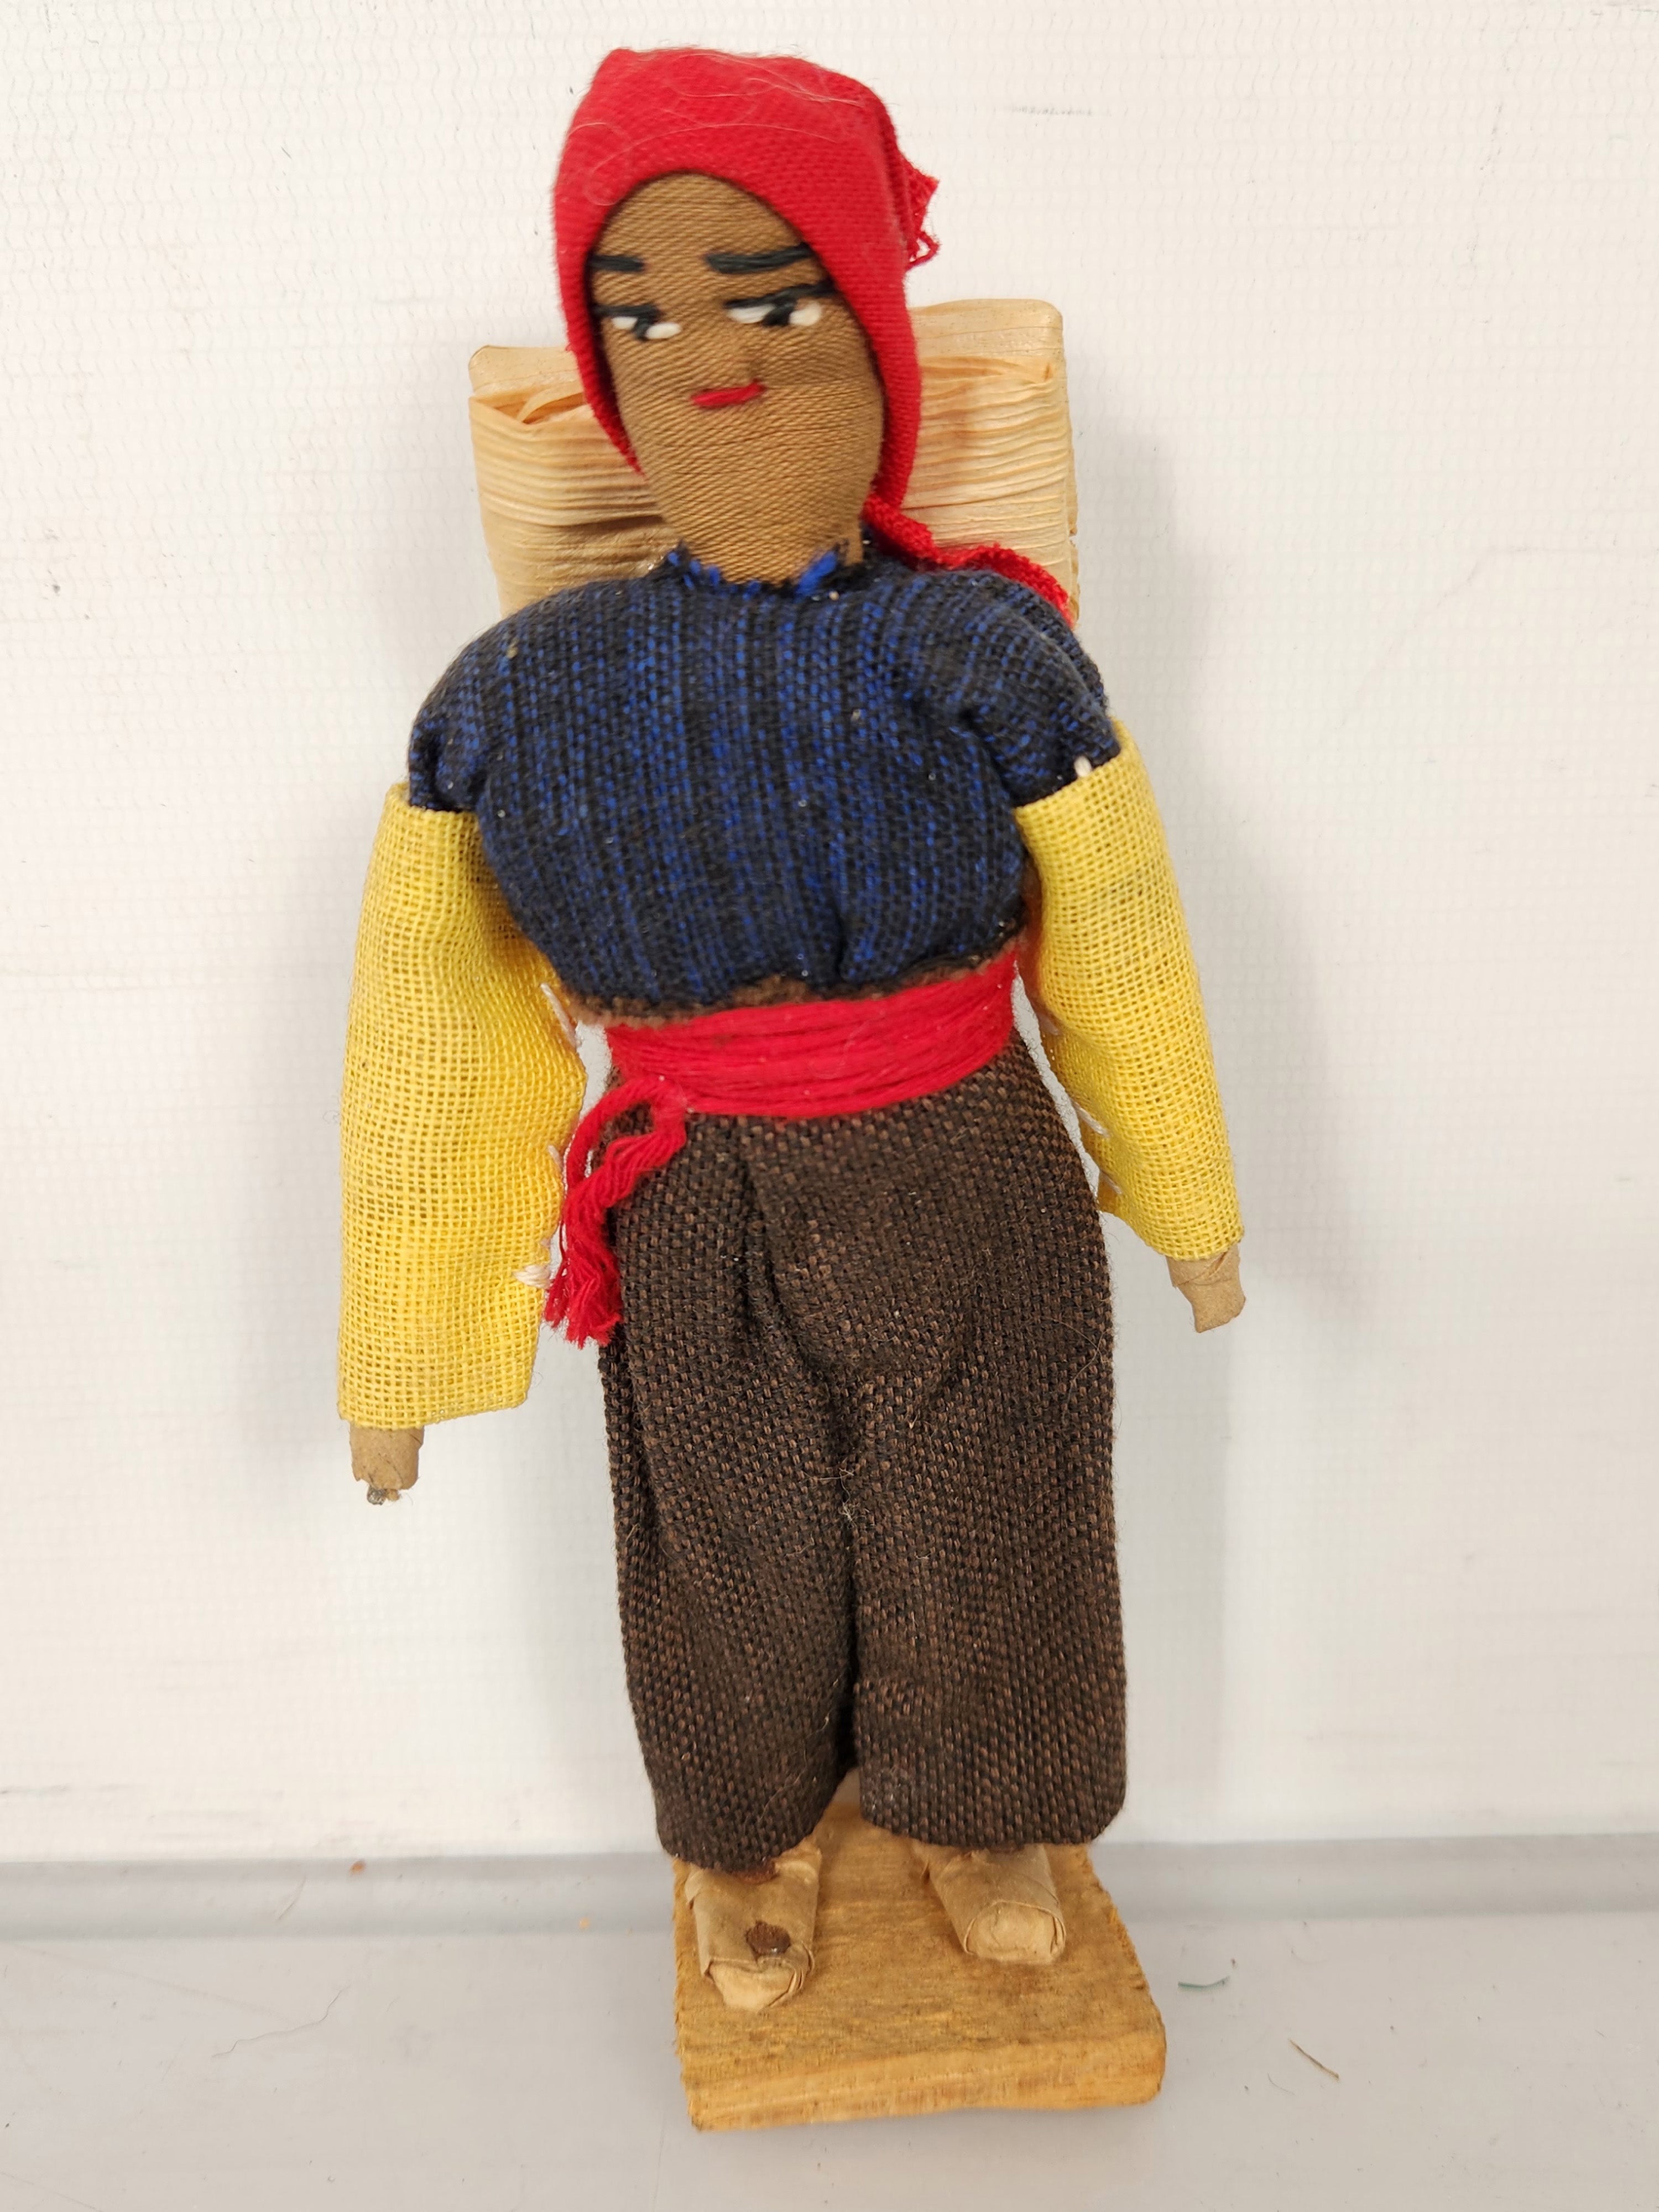 South American Cloth Folk Art Doll